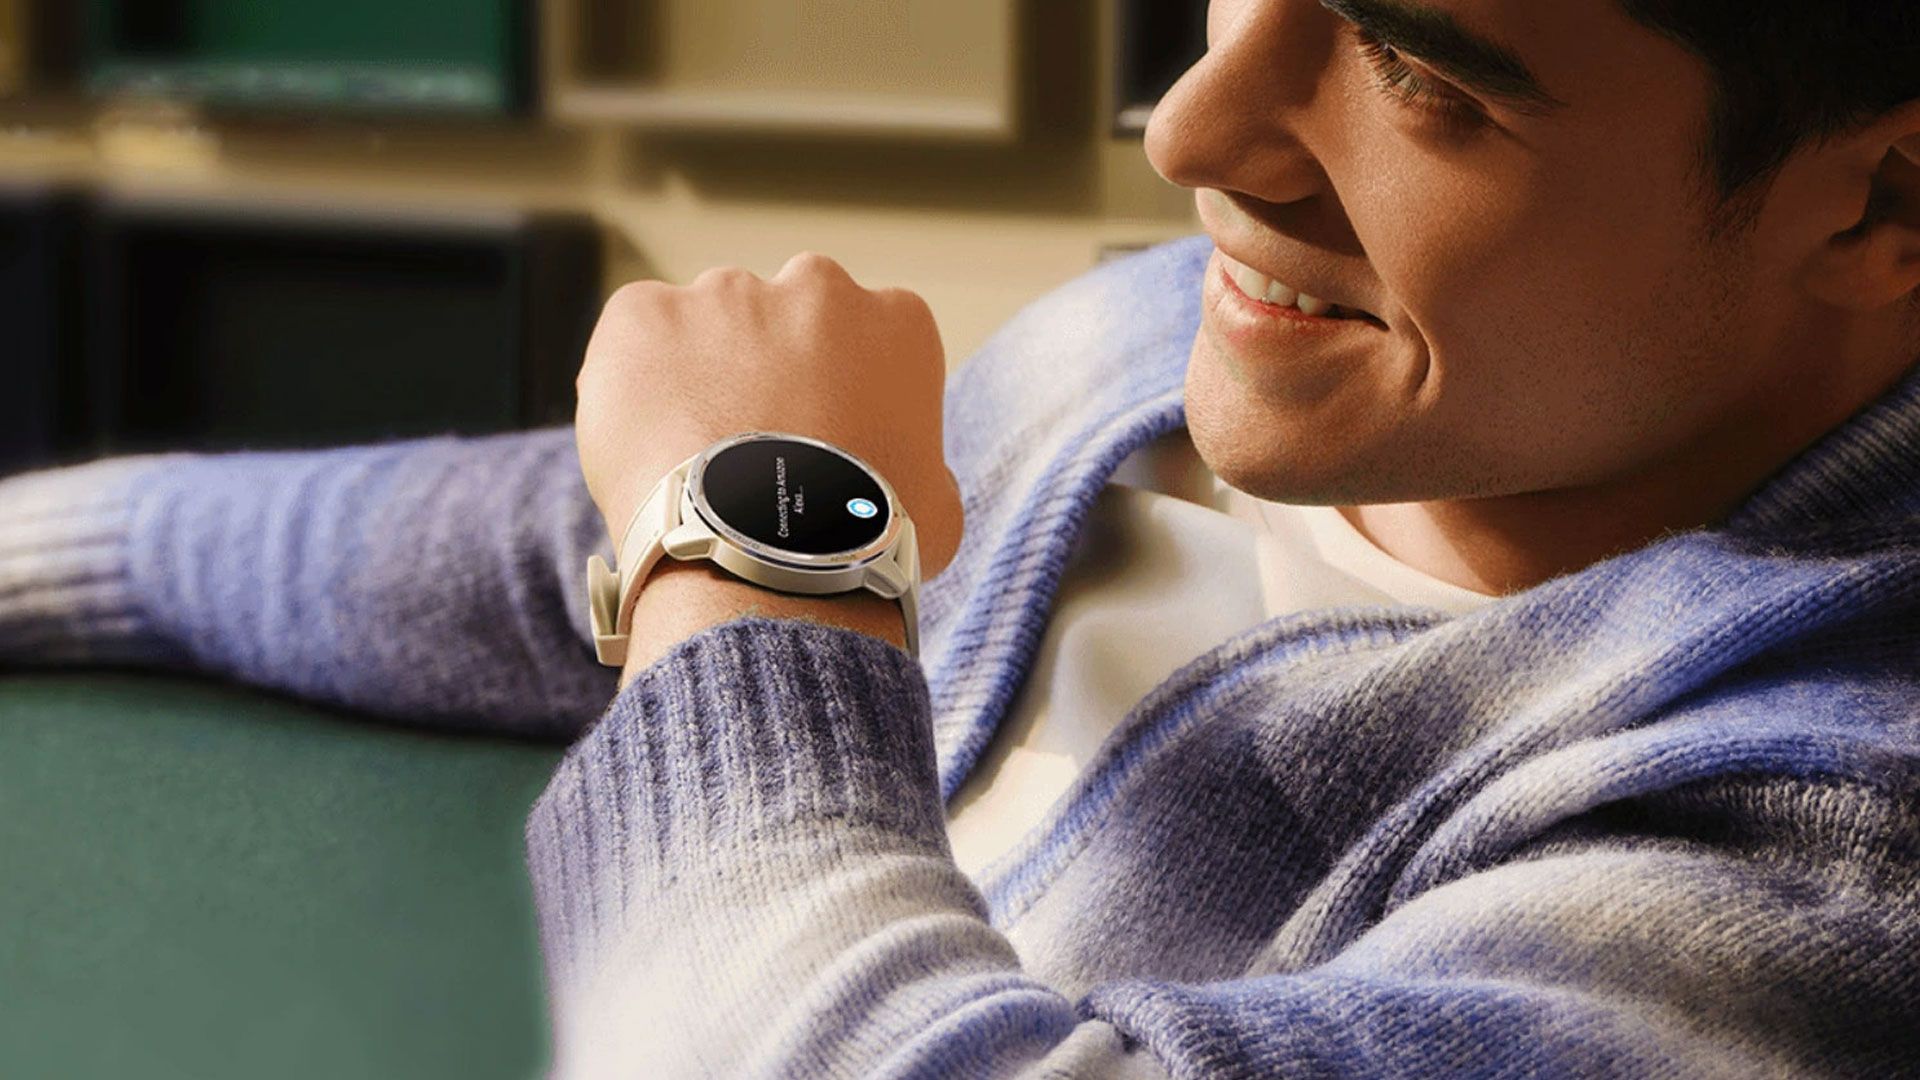 مرجع متخصصين ايران مردي در حال دستور دادن به دستيار صوتي در ساعت هوشمند